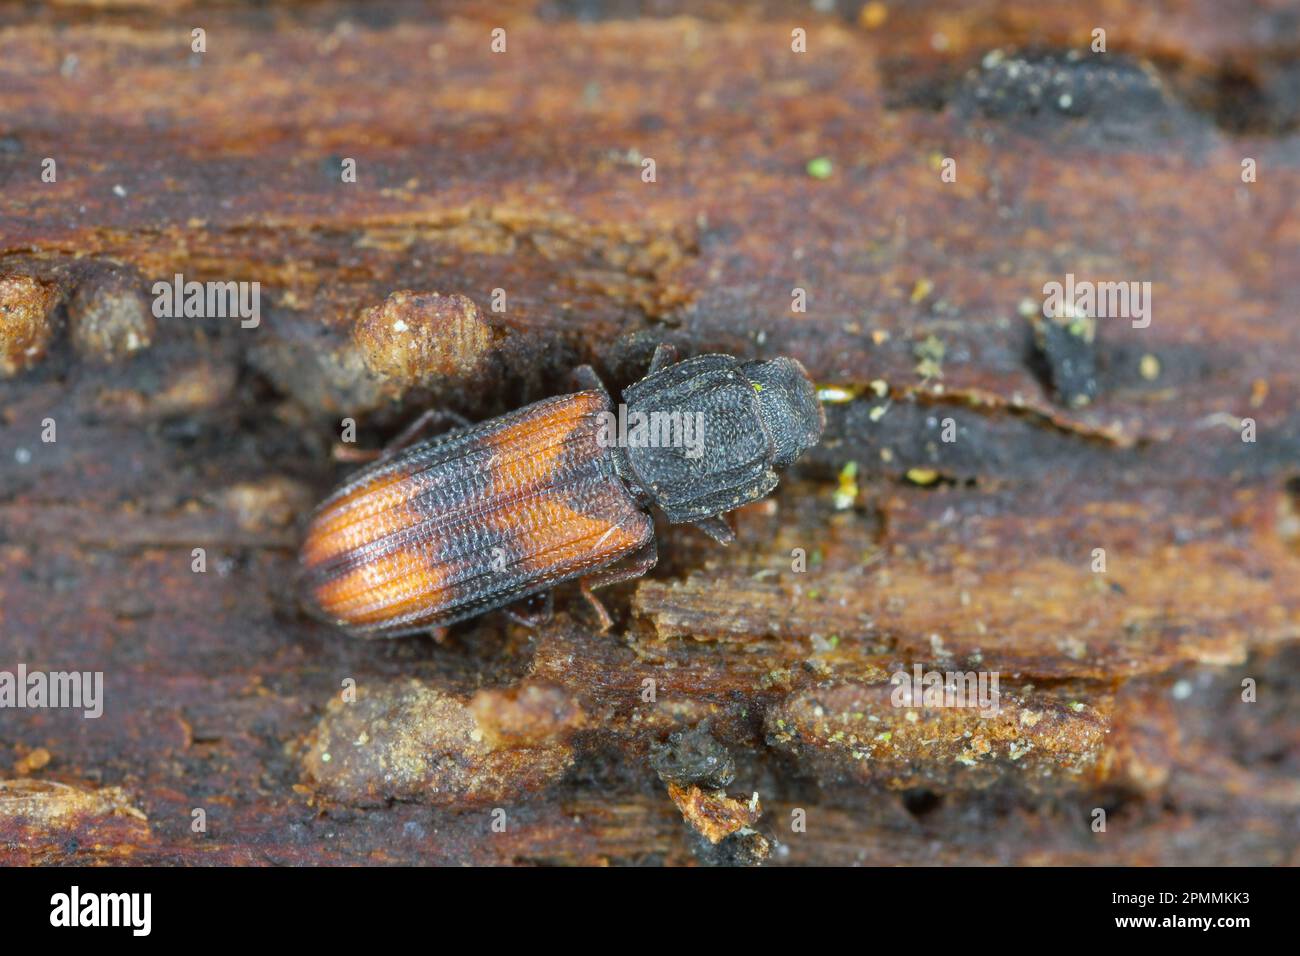 Saddle-backed Bitoma, Wedge-shaped Beetle (Bitoma crenata, Ditoma crenata), on deadwood. Stock Photo